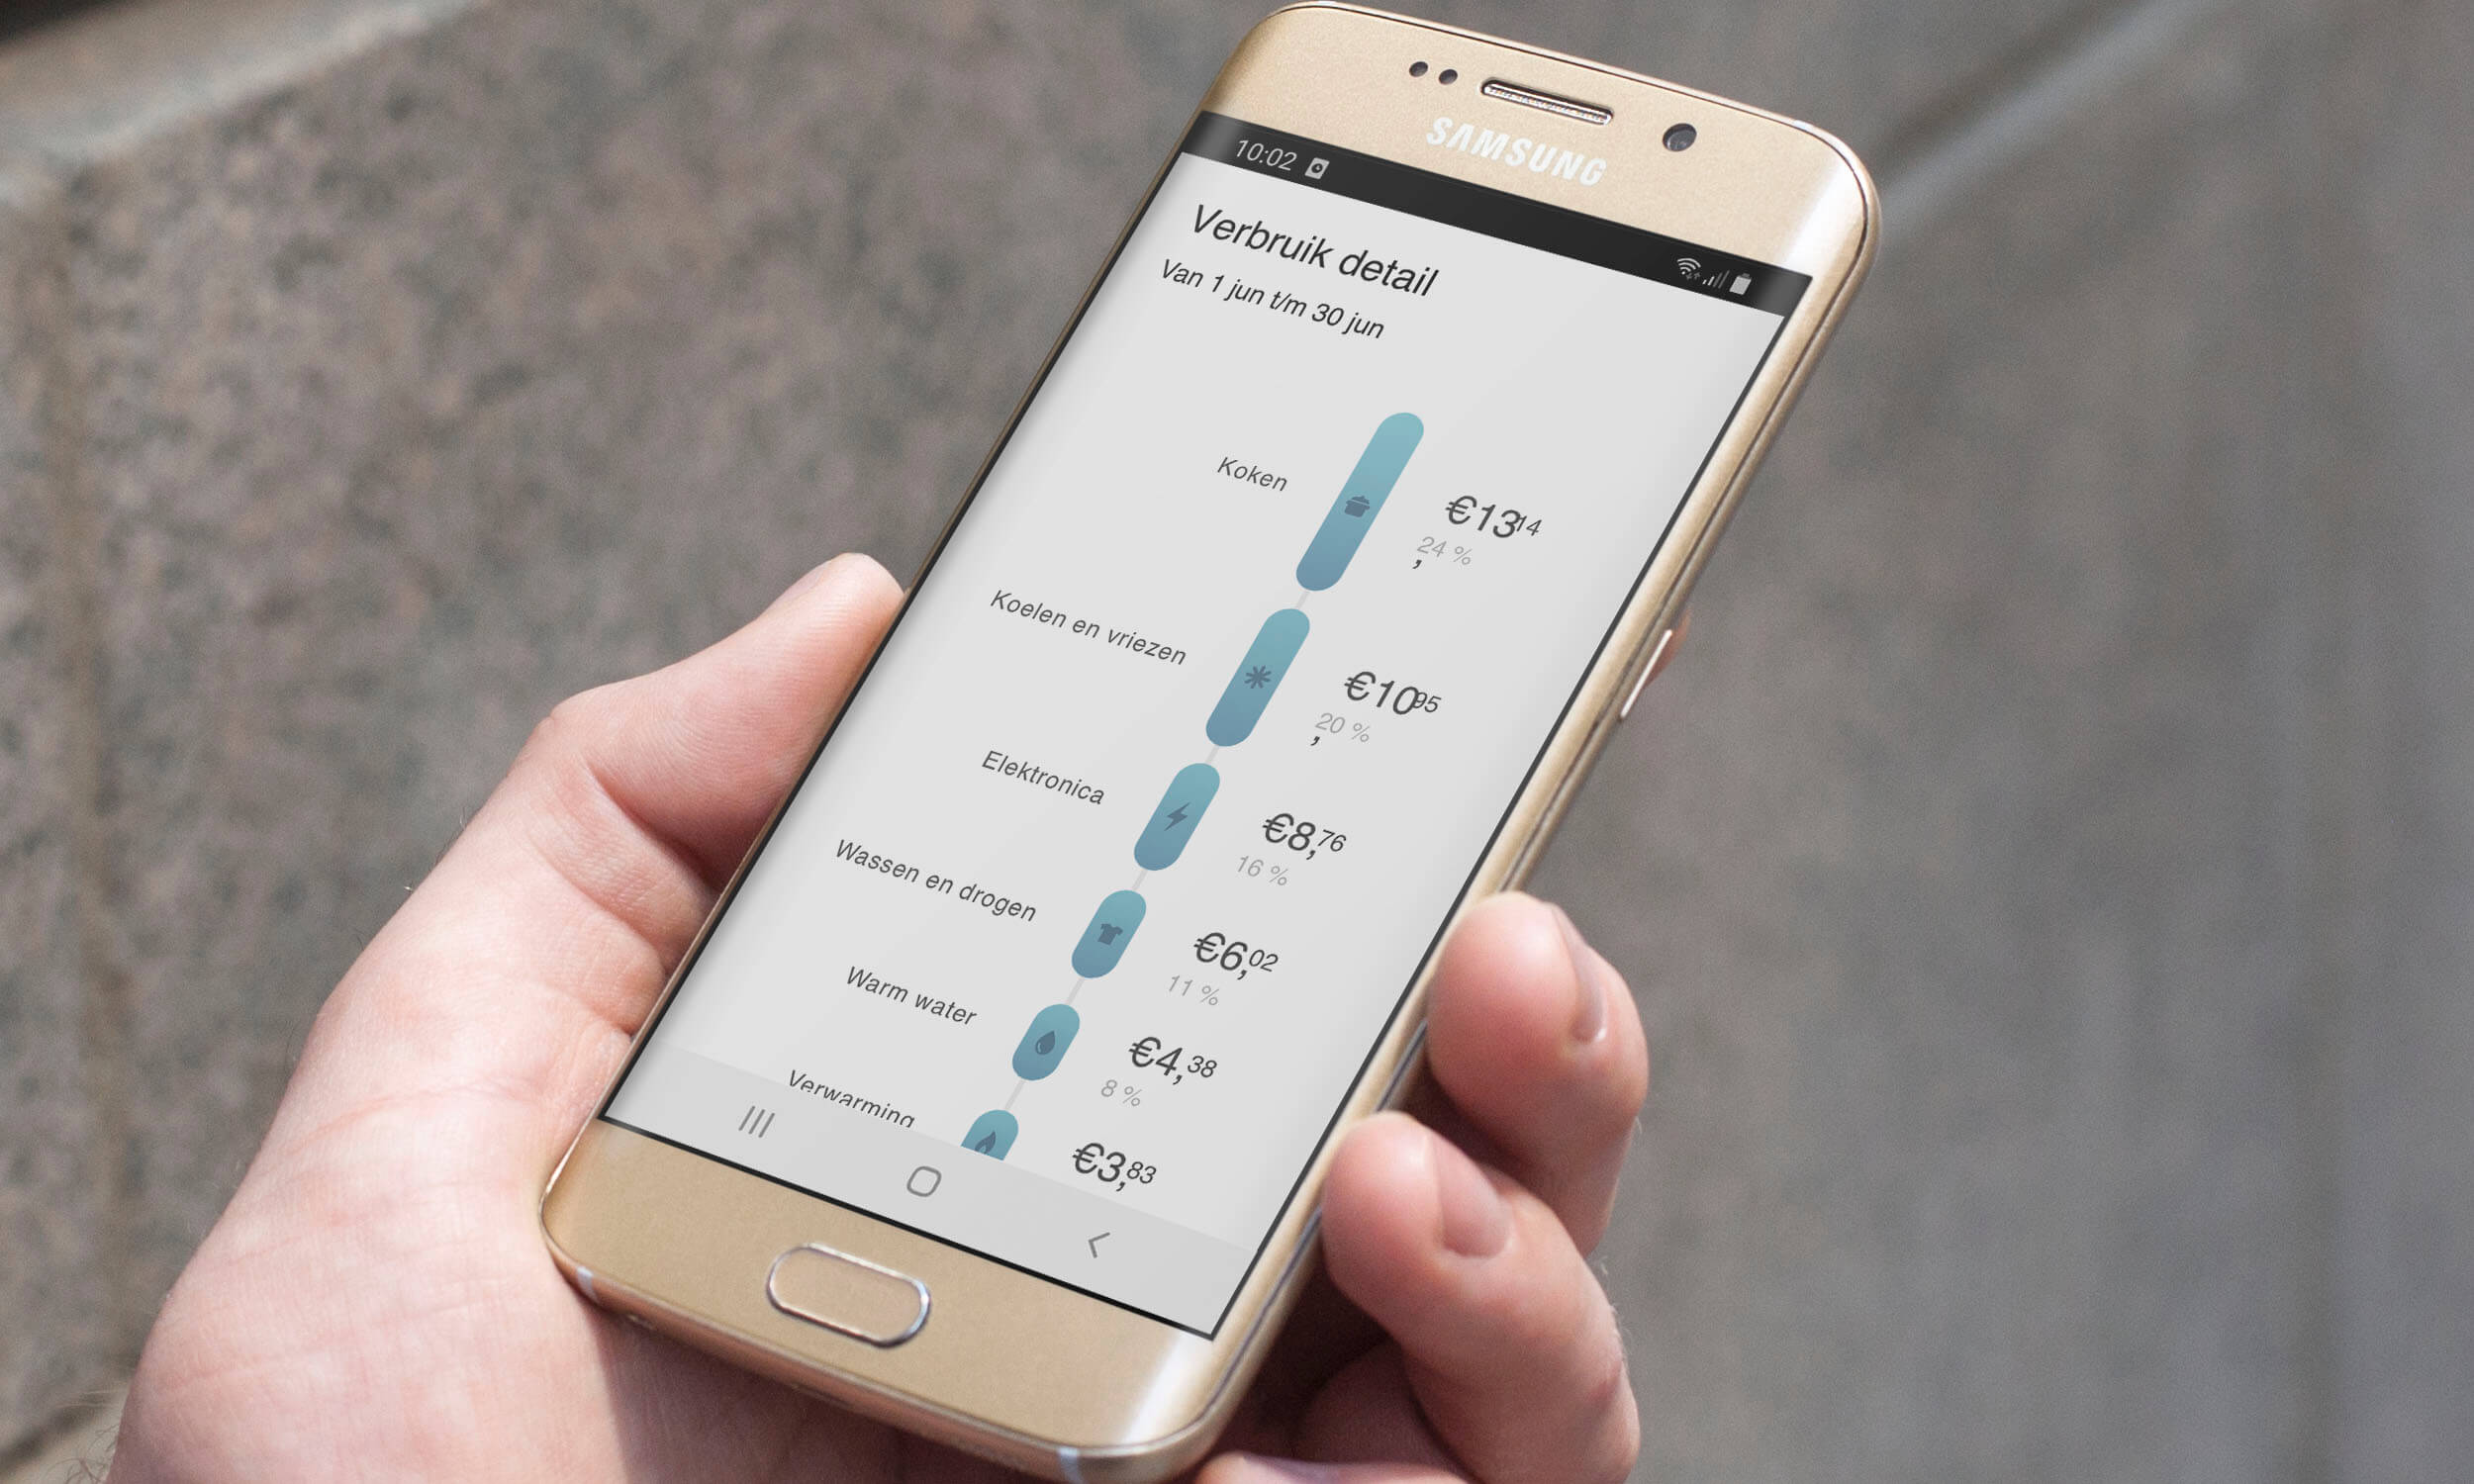 samsung android telefoon met oxxio App